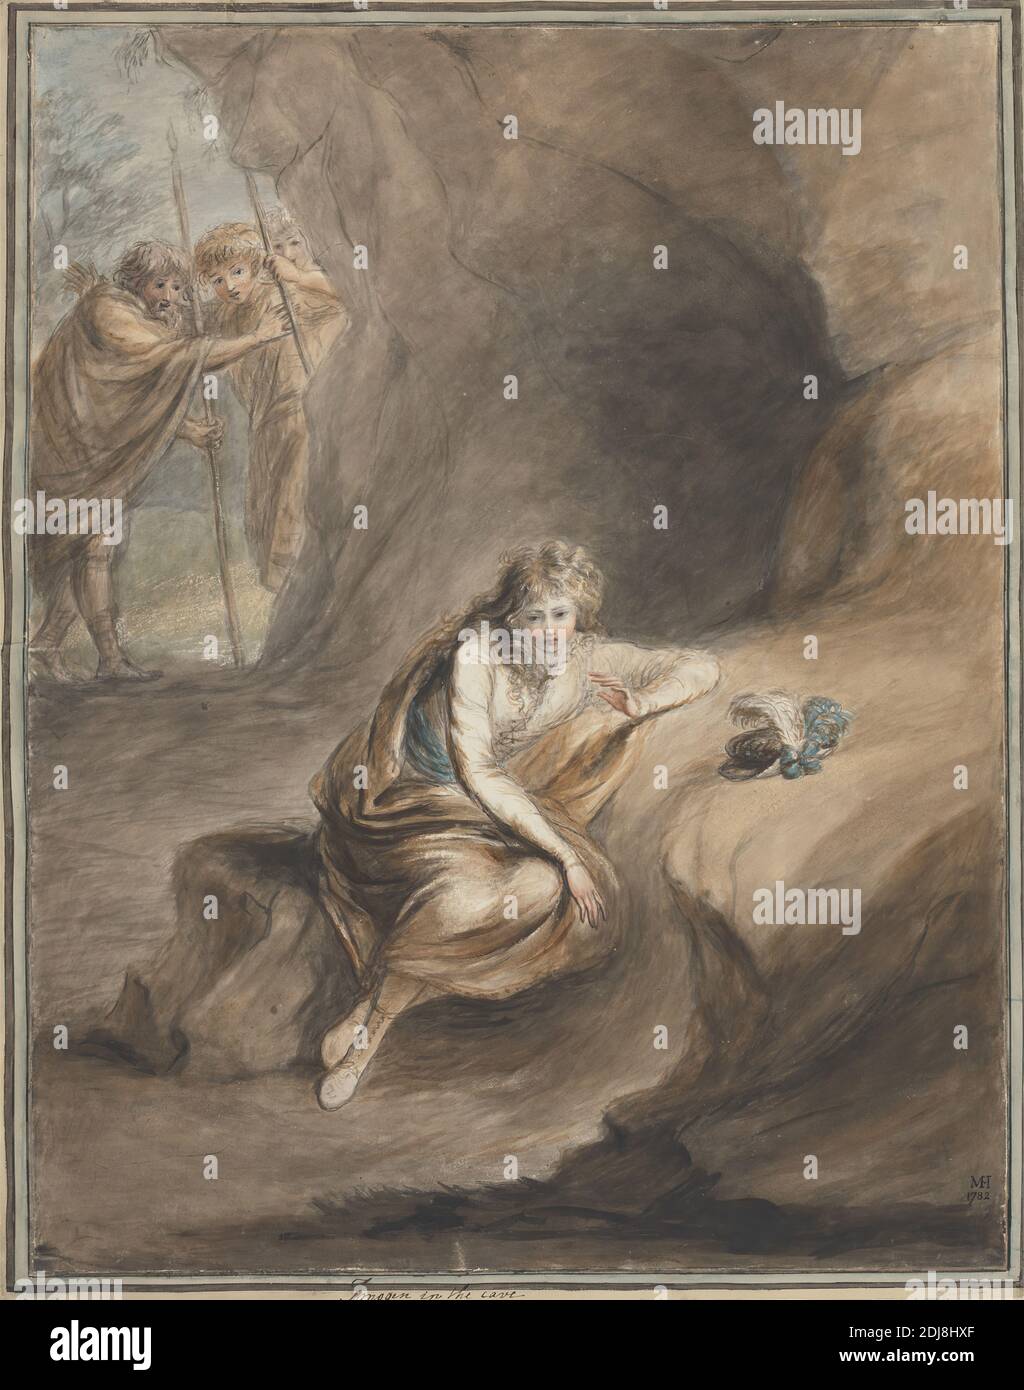 Imogen in the Cave, 'Cymbeline', III. Akt, Szene VI, Mary Hoare, 1753–1820, British, 1782, Aquarell und Graphit mit Stift und schwarzer Tinte auf dickem, leicht strukturiertem cremefarbenen Wove-Papier montiert auf mäßig dickem, leicht strukturiertem cremefarbenen Papier mit zeitgemäßer Umrandung, Mount: 23 1/16 x 18 5/16 Zoll (58.5 x 46.5 cm), zeitgemäßer gezeichneter Rand: 22 5/8 x 18 1/16 Zoll (57.5 x 45.8 cm) und Blatt: 21 7/8 x 17 1/8 Zoll (55.6 x 43.5 cm), Mütze, Umhang, Umhang, Cross-Dressing, Cymbeline, III. Akt, VI. Szene, Cymbeline, Theaterstück von William Shakespeare, Sammeln, Gestik, Jäger, literarisches Thema Stockfoto